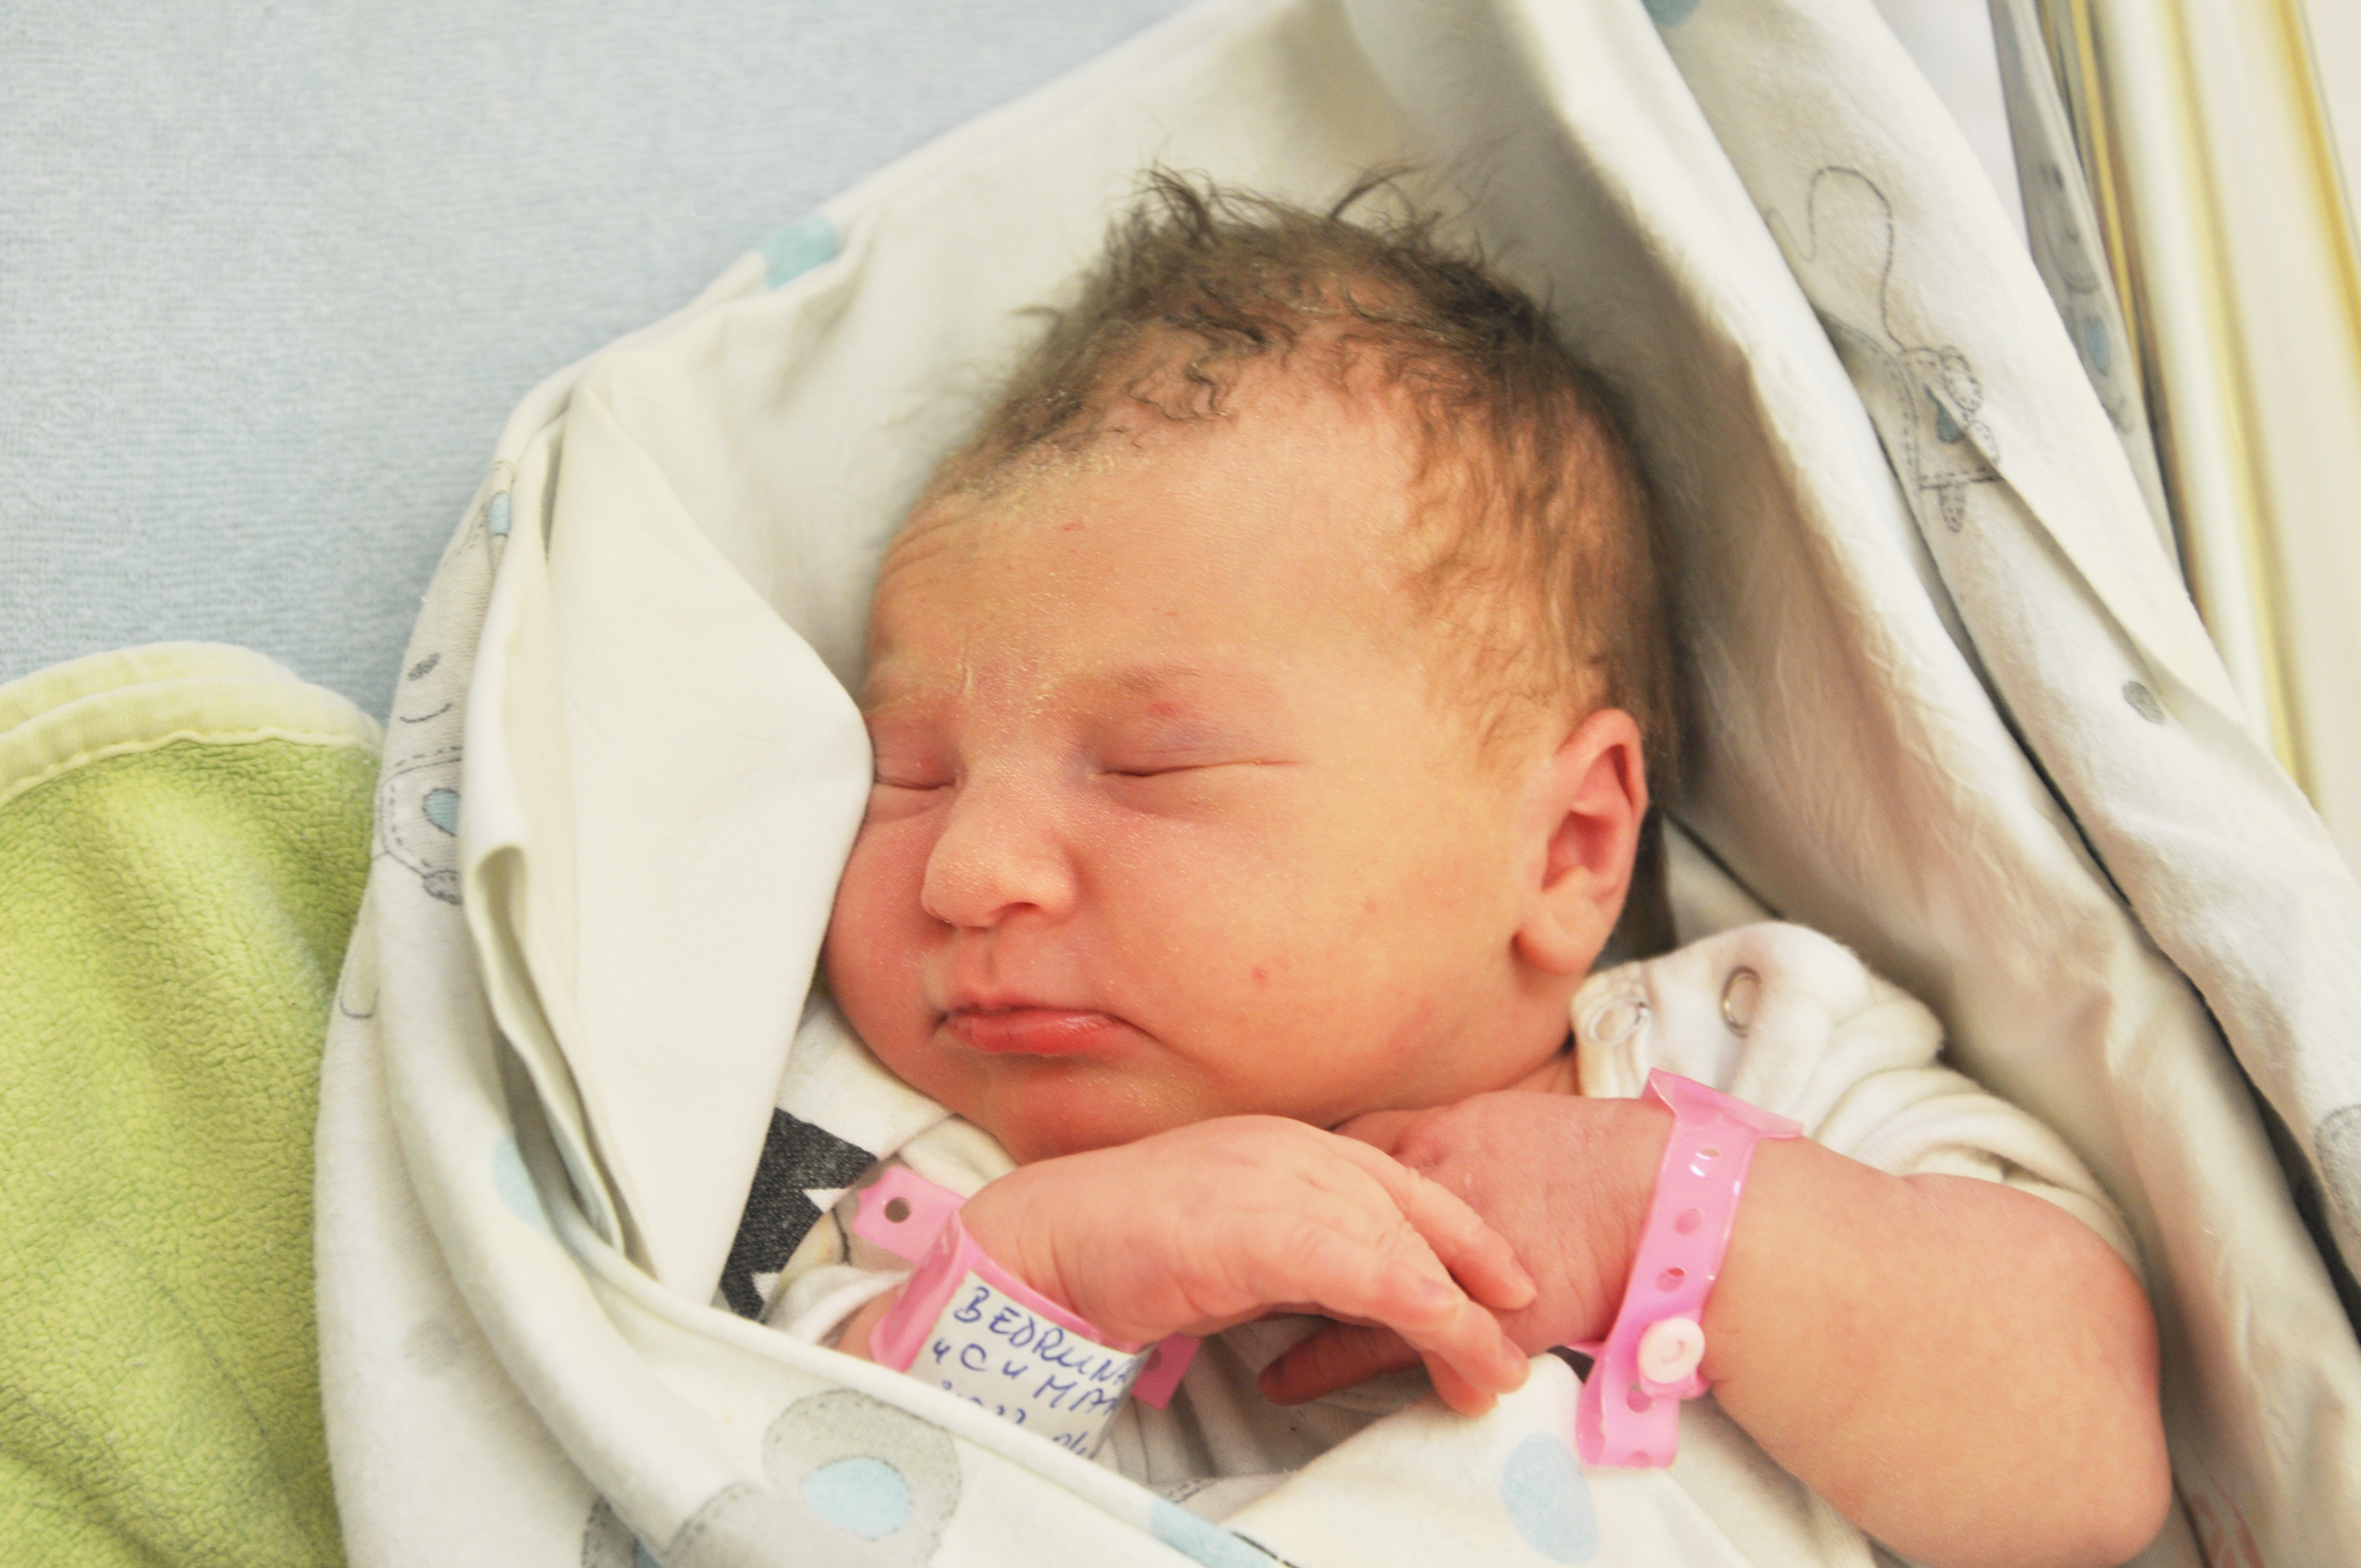 Felicja Bedrunka-Buba urodziła się 14 kwietnia o 5.30. Ważyła wtedy 3260 g i mierzyła 52 cm. Mama Marta i tato Dawid mieszkają w Krzyżanowicach, w domu czeka siostra Eliza.